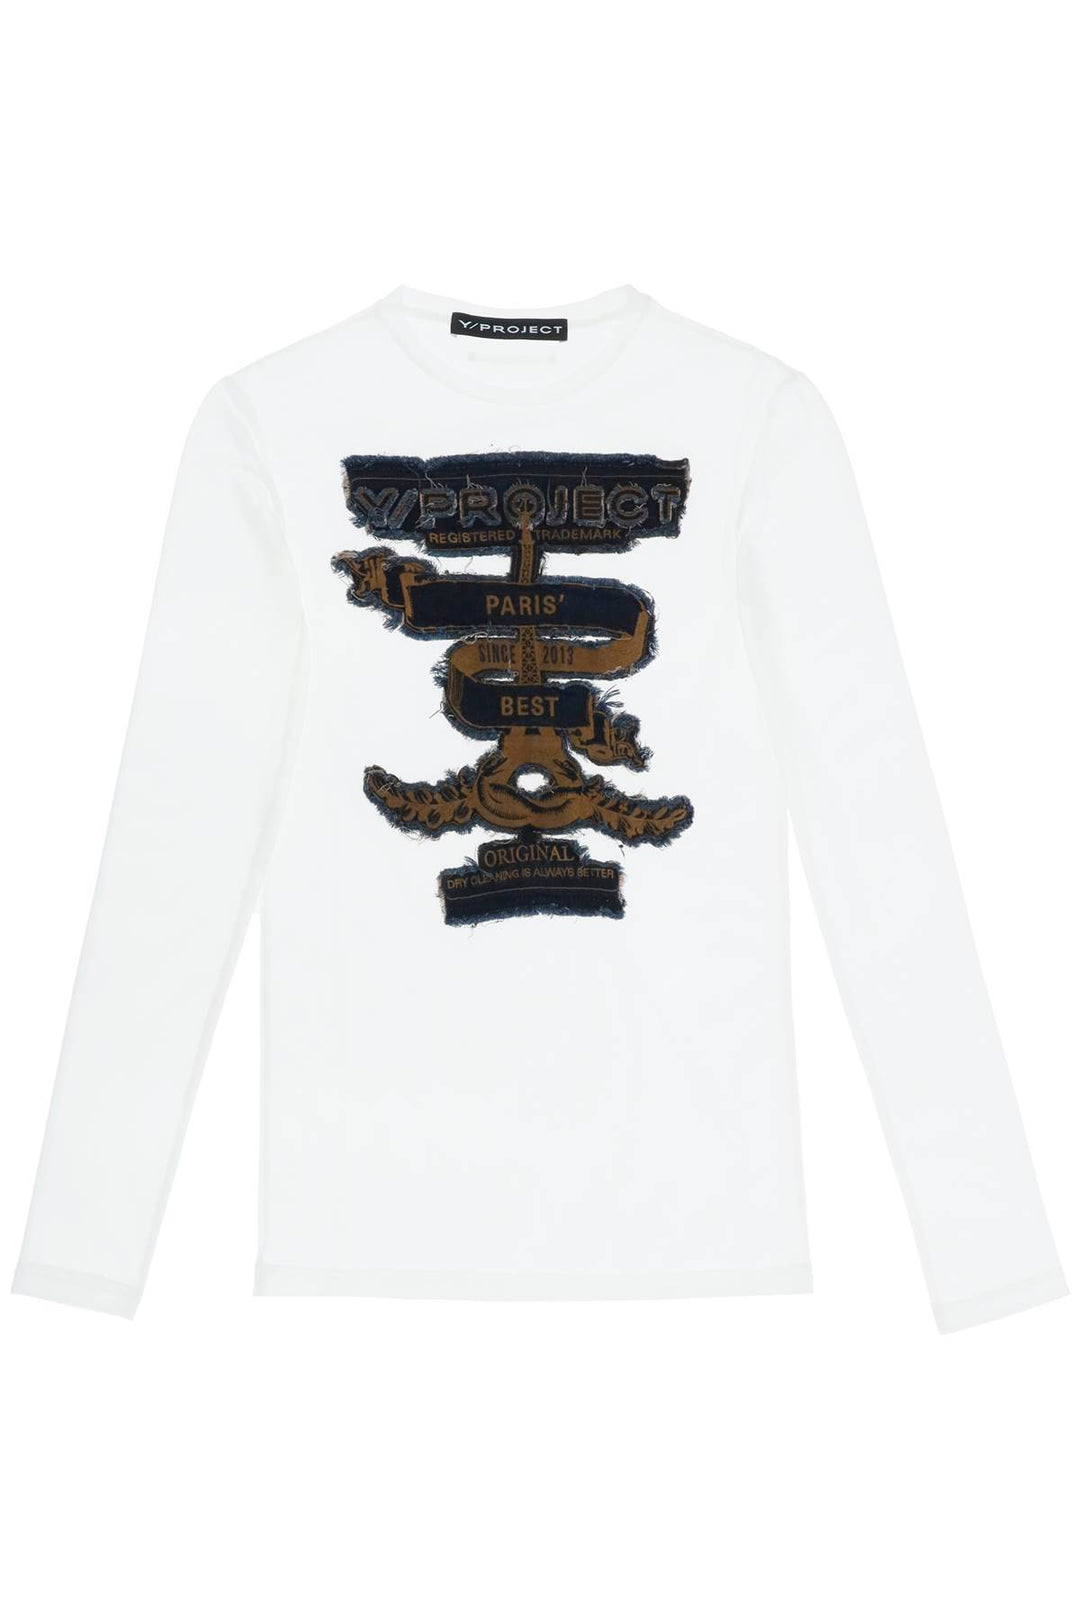 Y Project Paris' Best Long Sleeve Mesh T Shirt   Bianco